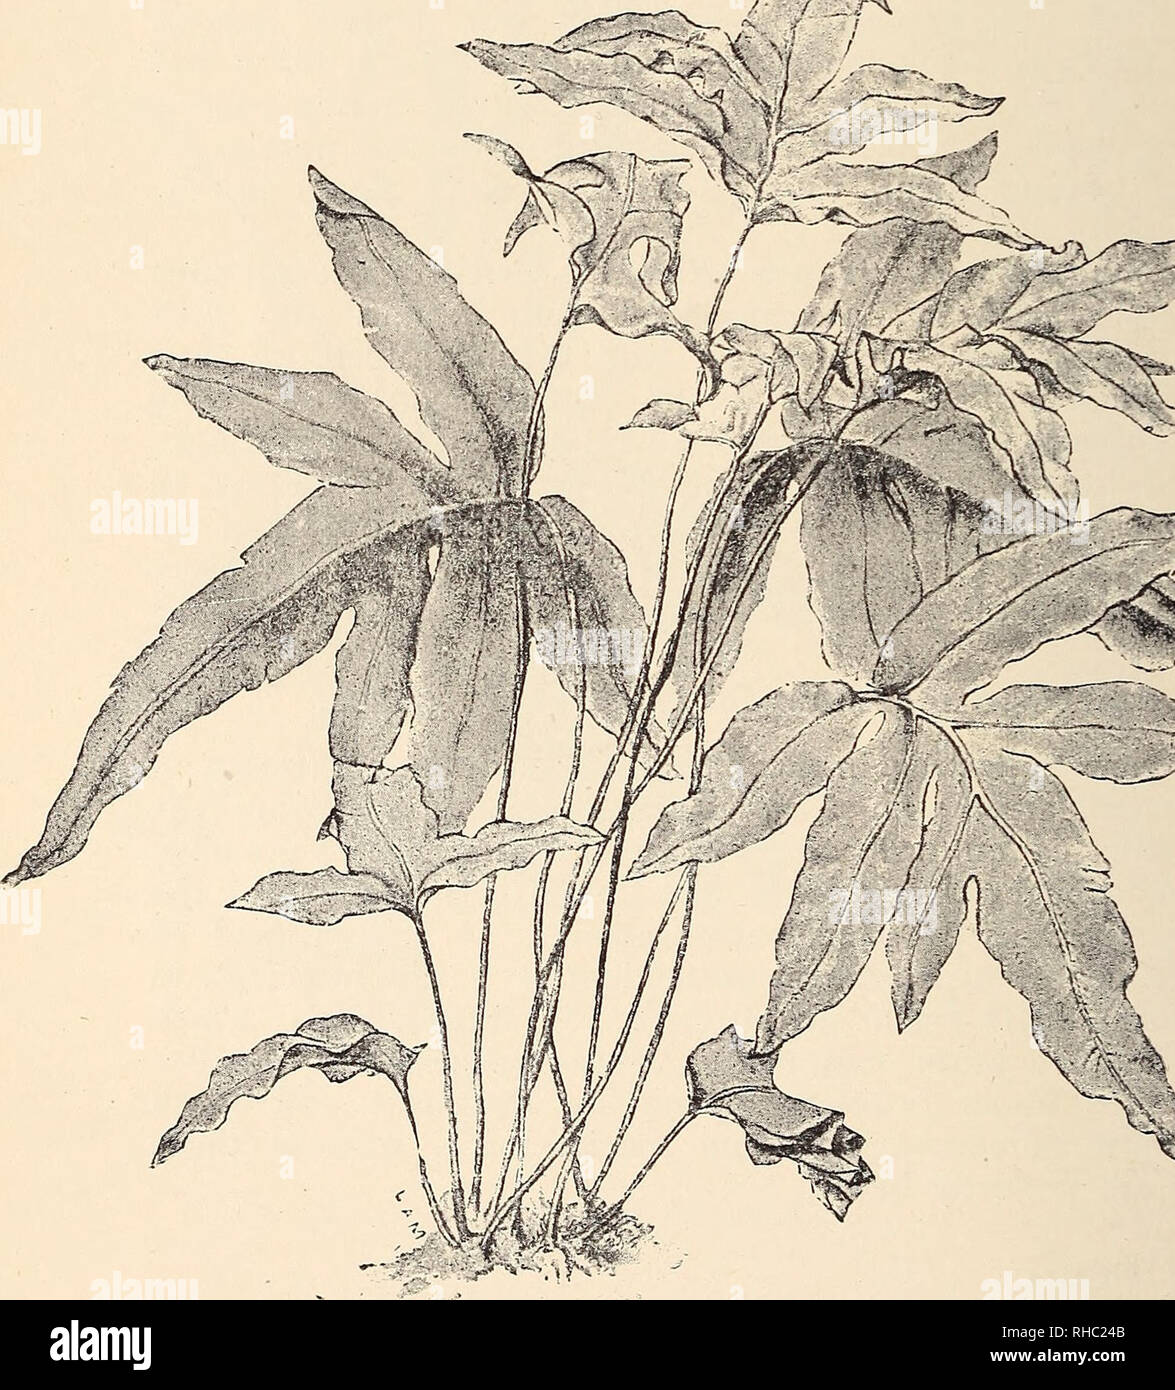 . The Book of gardening; a handbook of horticulture. Gardening; Floriculture. 558 THE BOOK OF GARDENING. Dicksonia antarctica. Barometz. chrysotricha. fibrosa, regalis.* Schiedei.* Dicksonia squarrosa. Hemitelia Smithii. Lomaria cycadoides. discolor. gibba. Those marked * require stove temperature. Gigantic Non=arborescent Ferns. Acrostichum aureum.* Angiopteris evecta.* cervinum. Aspidium capense. scandens.* Asplenium longissimum.. Fig. 346.—PoLYPODiuM aureum. Adiantum cardiochlaenum.* tenerum.* trapeziforme (Fig. 332). Asplenium Nidus.* Blechnum brasiliense. Davallia divaricata.*. Please not Stock Photo